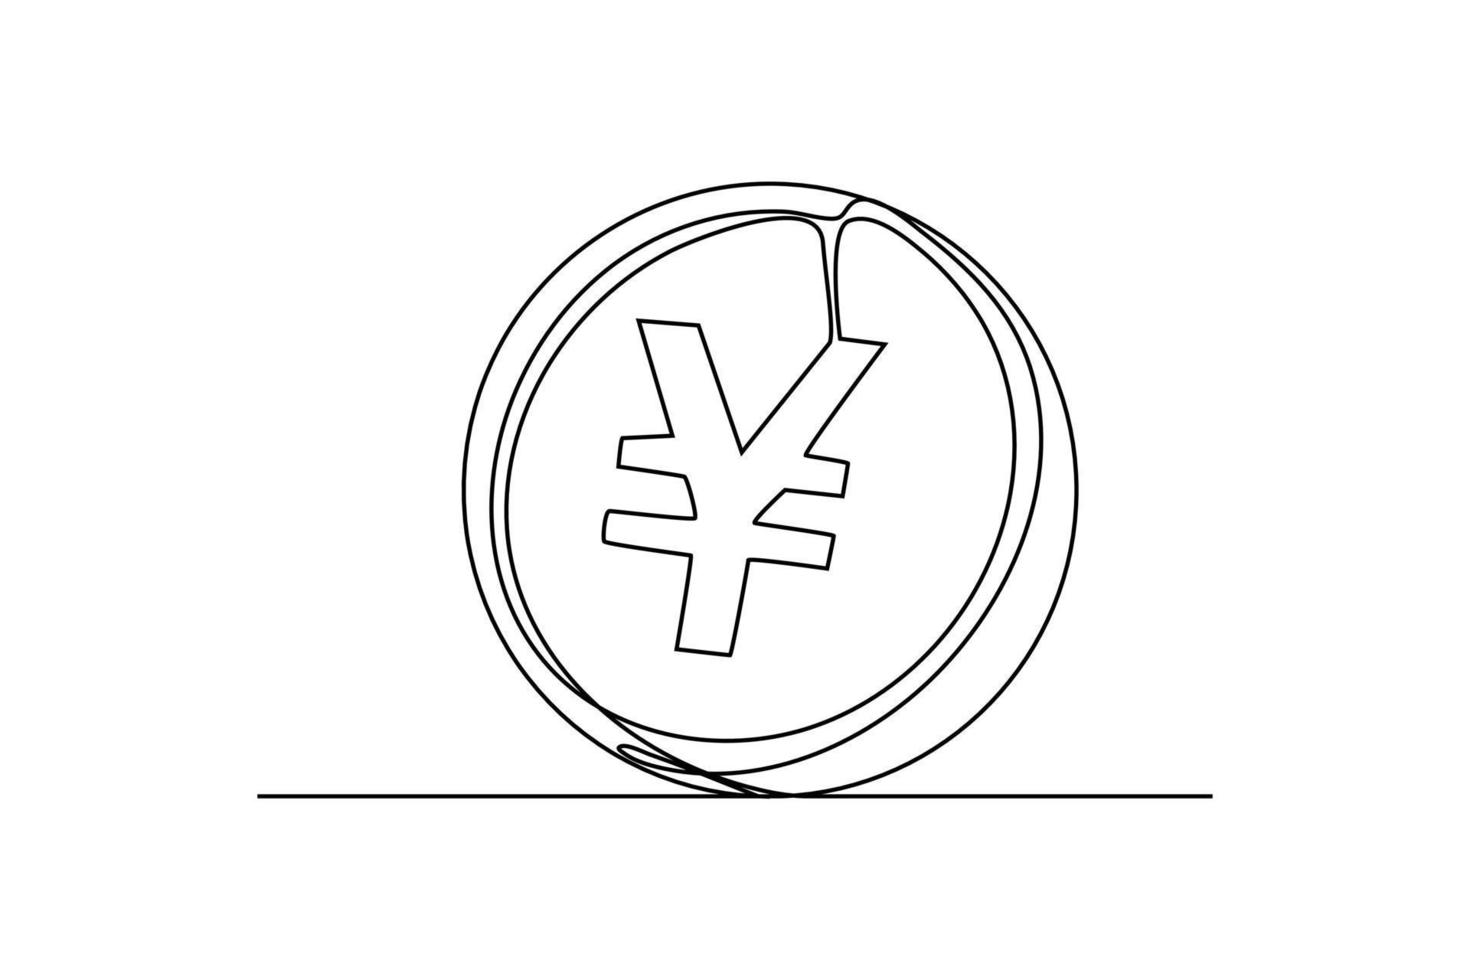 doorlopend een lijn tekening yen munt valuta van Japan. land valuta concept. single lijn tekening ontwerp grafisch vector illustratie